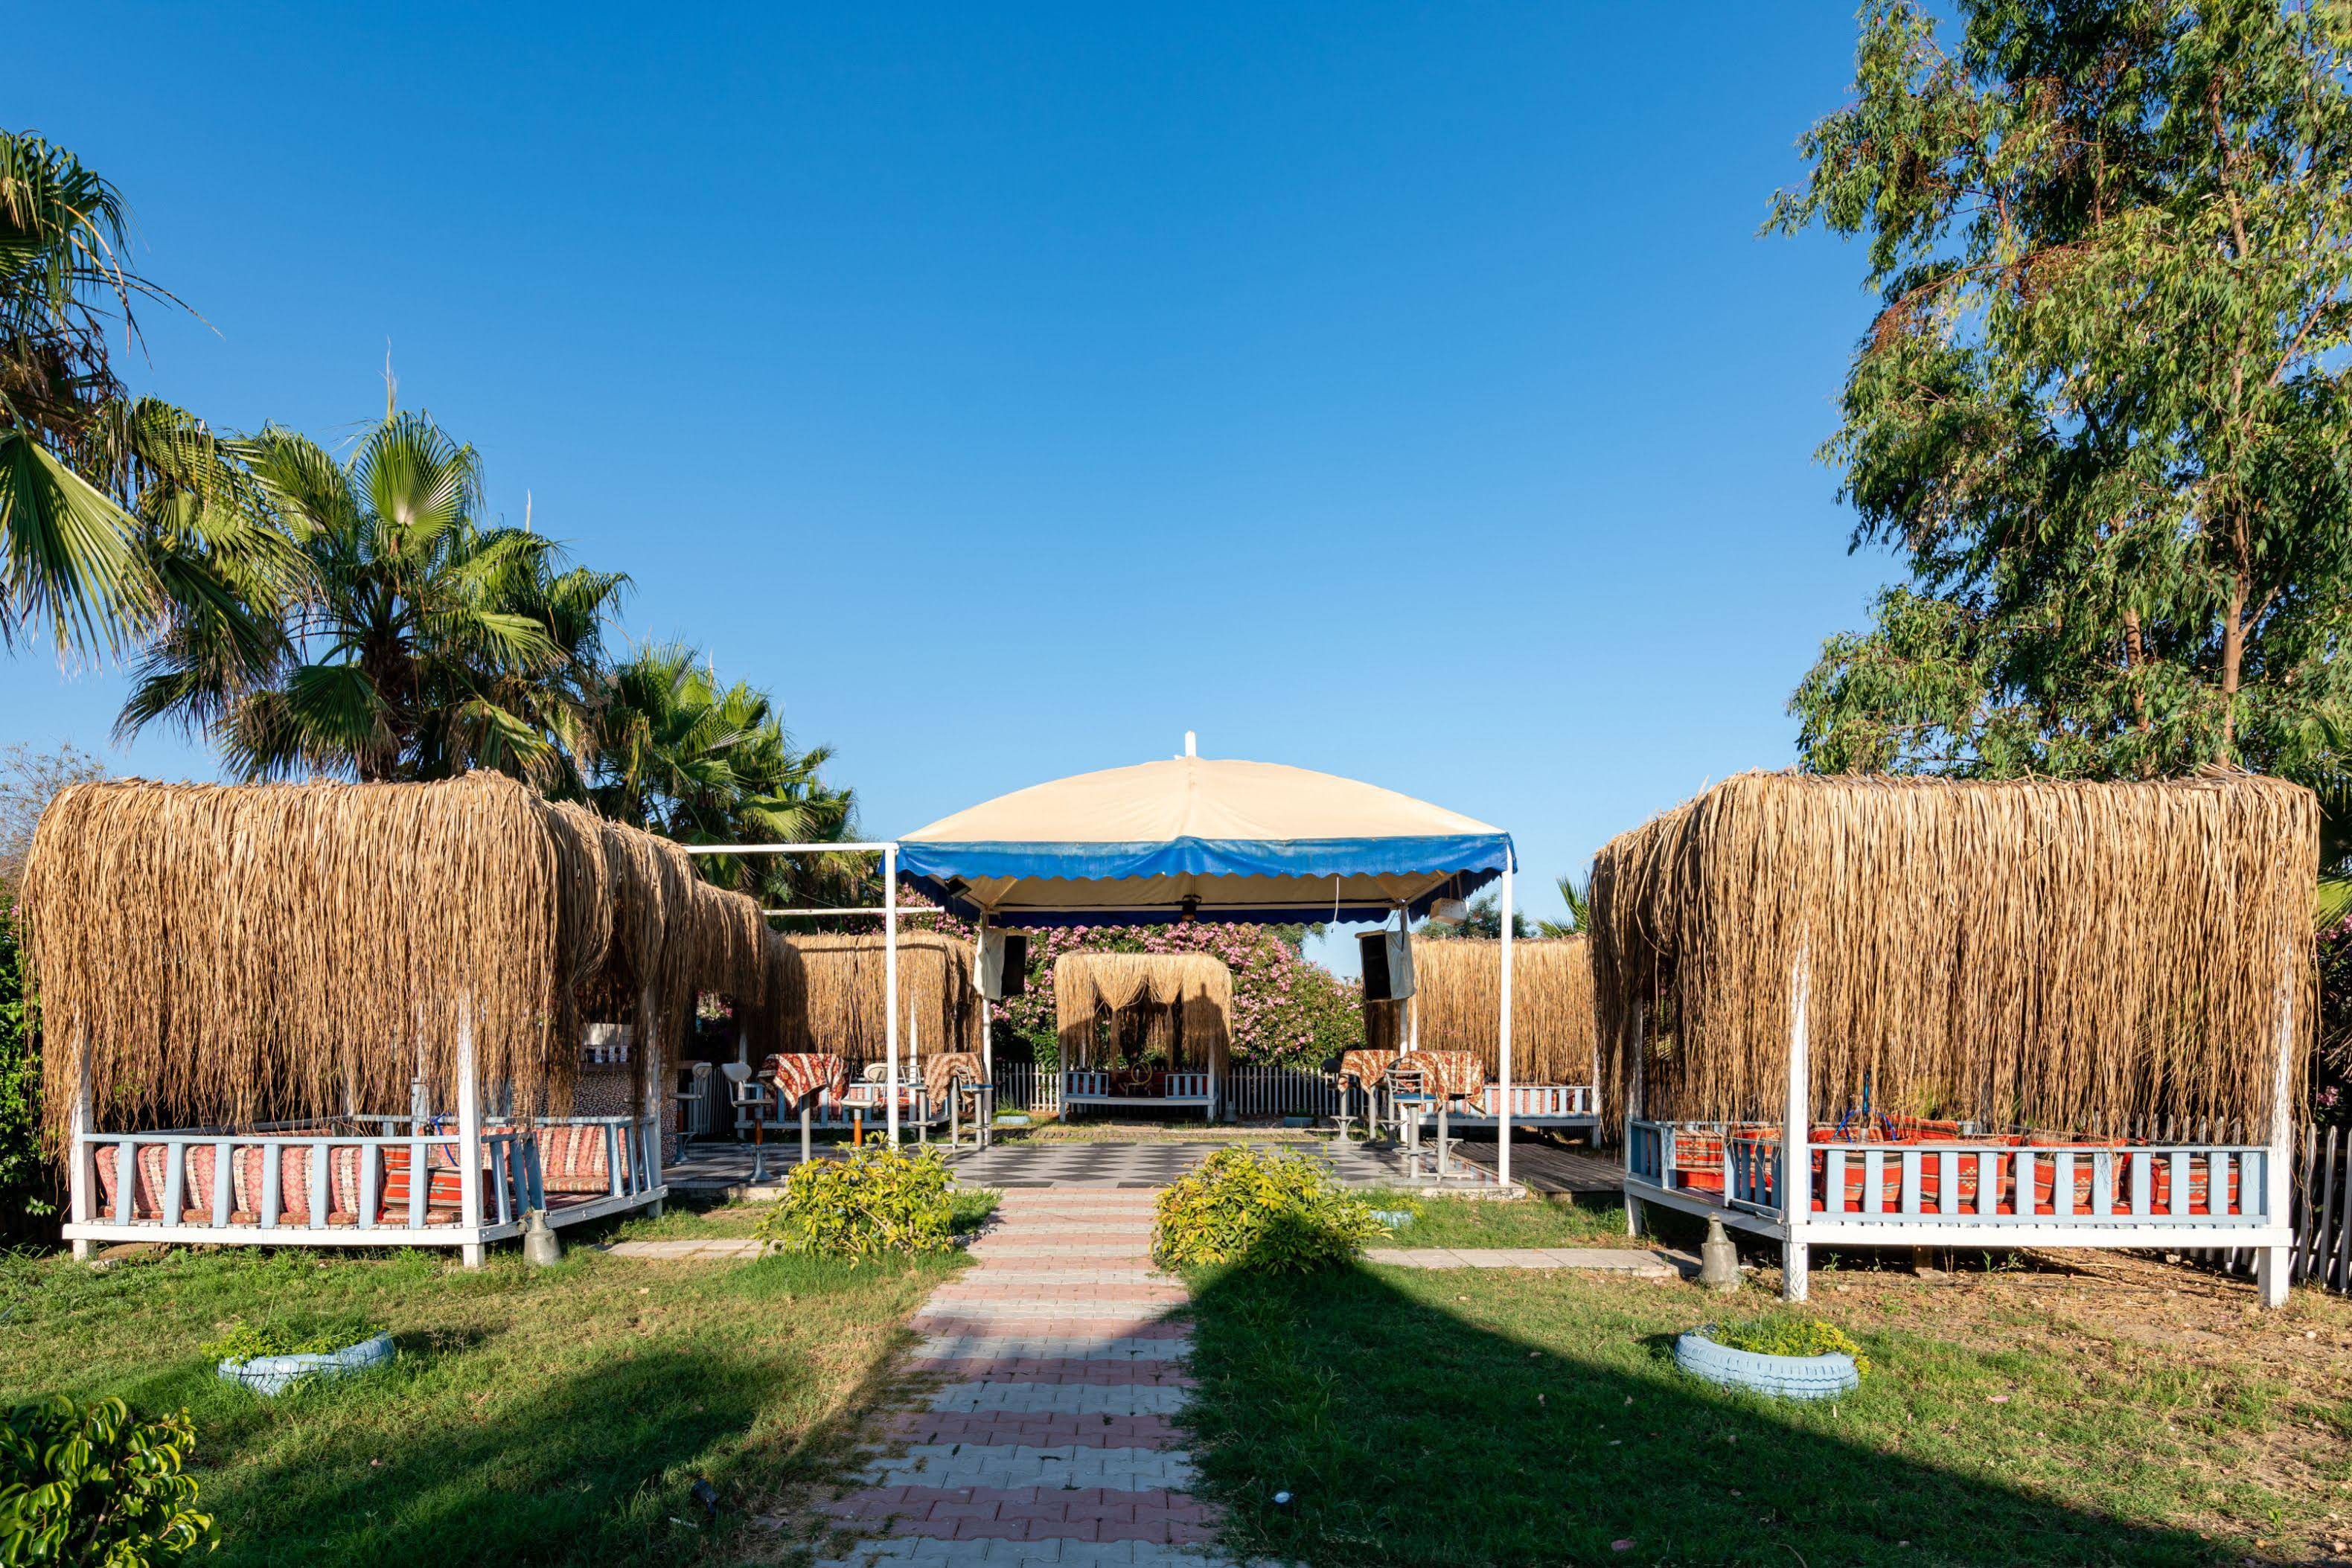 The Garden Beach Hotel